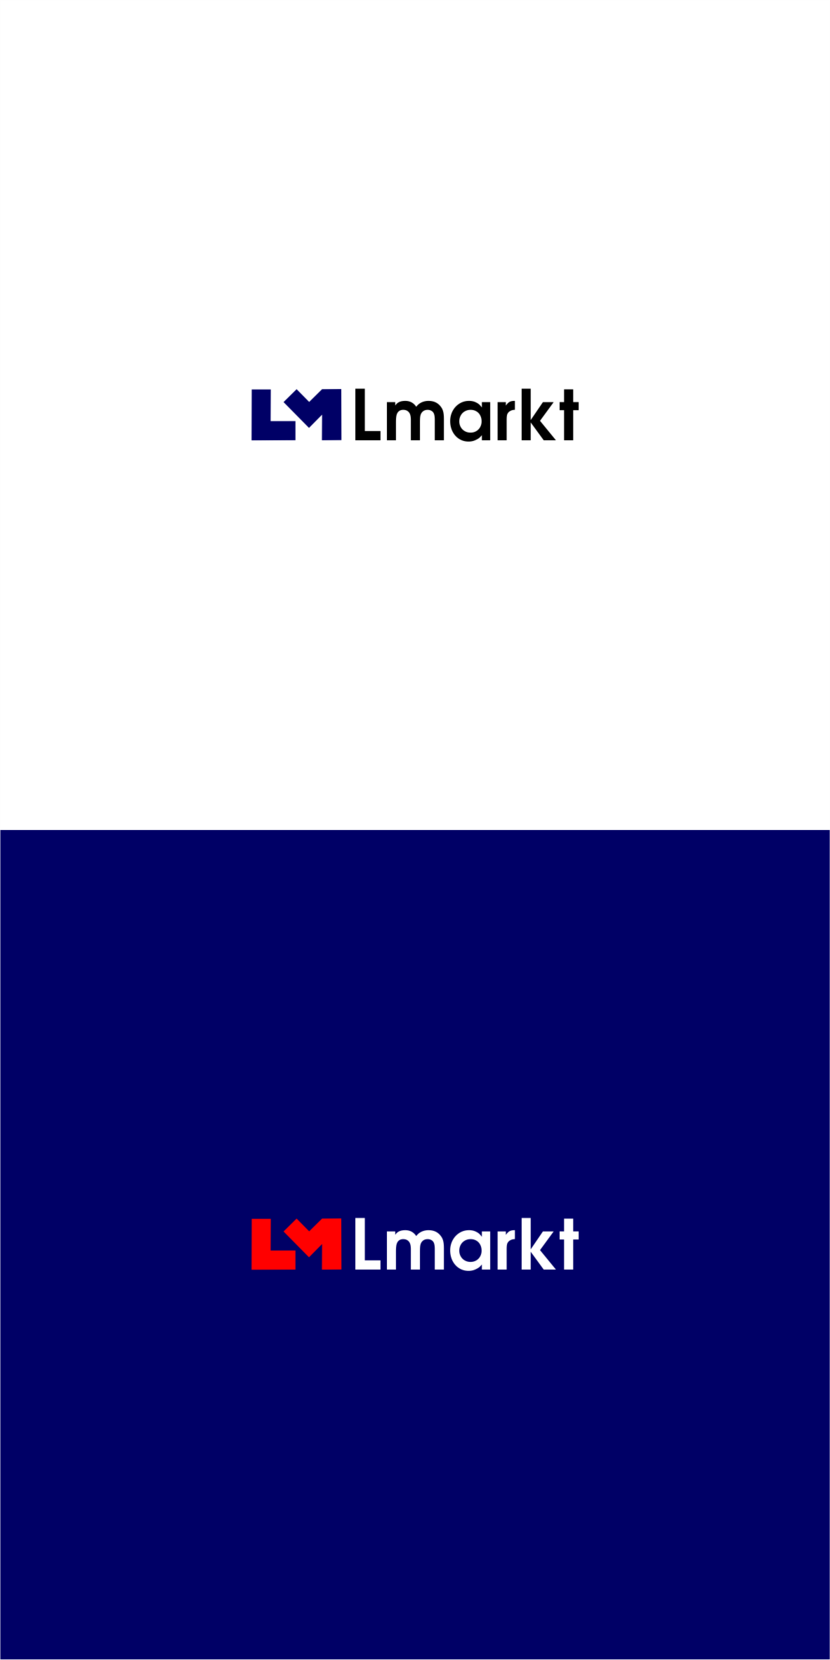 2 - Создание логотипа для маркетплейса